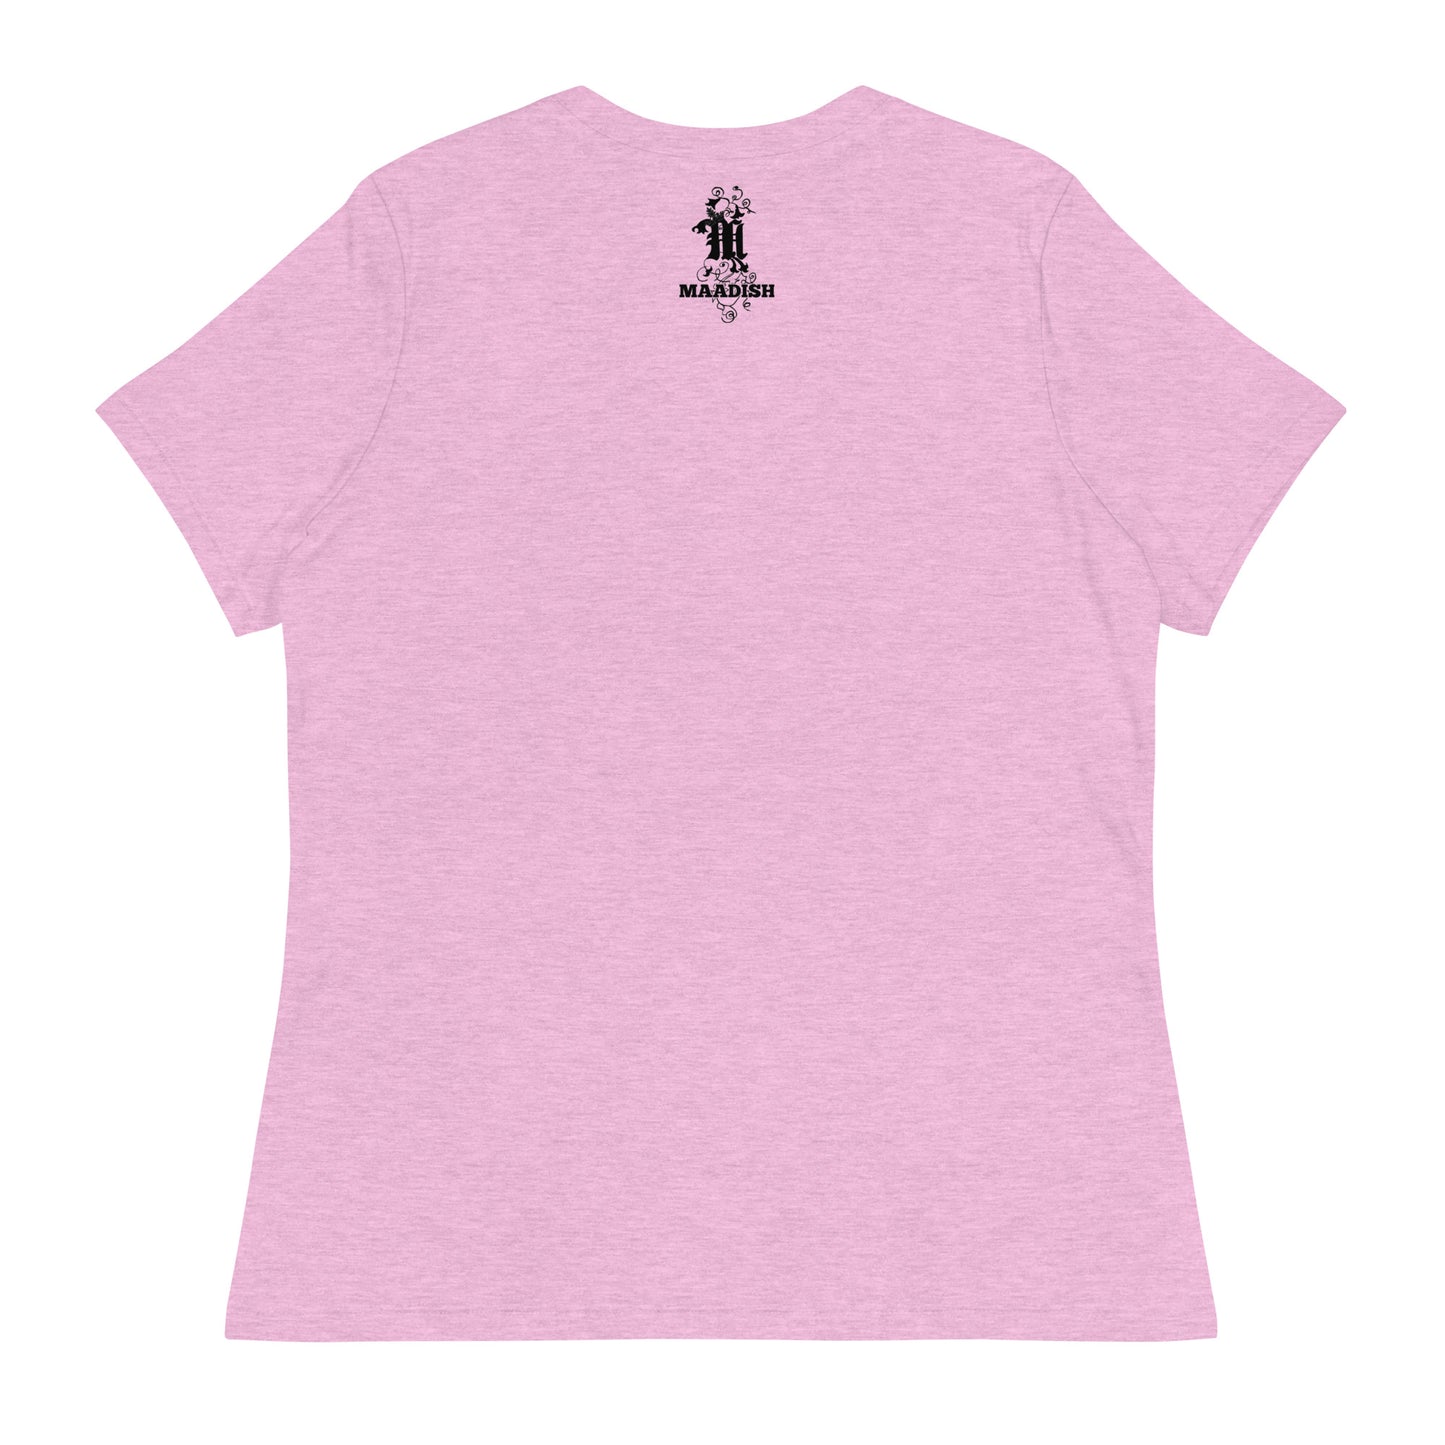 Maadish | Pink Baltimore T-Shirt